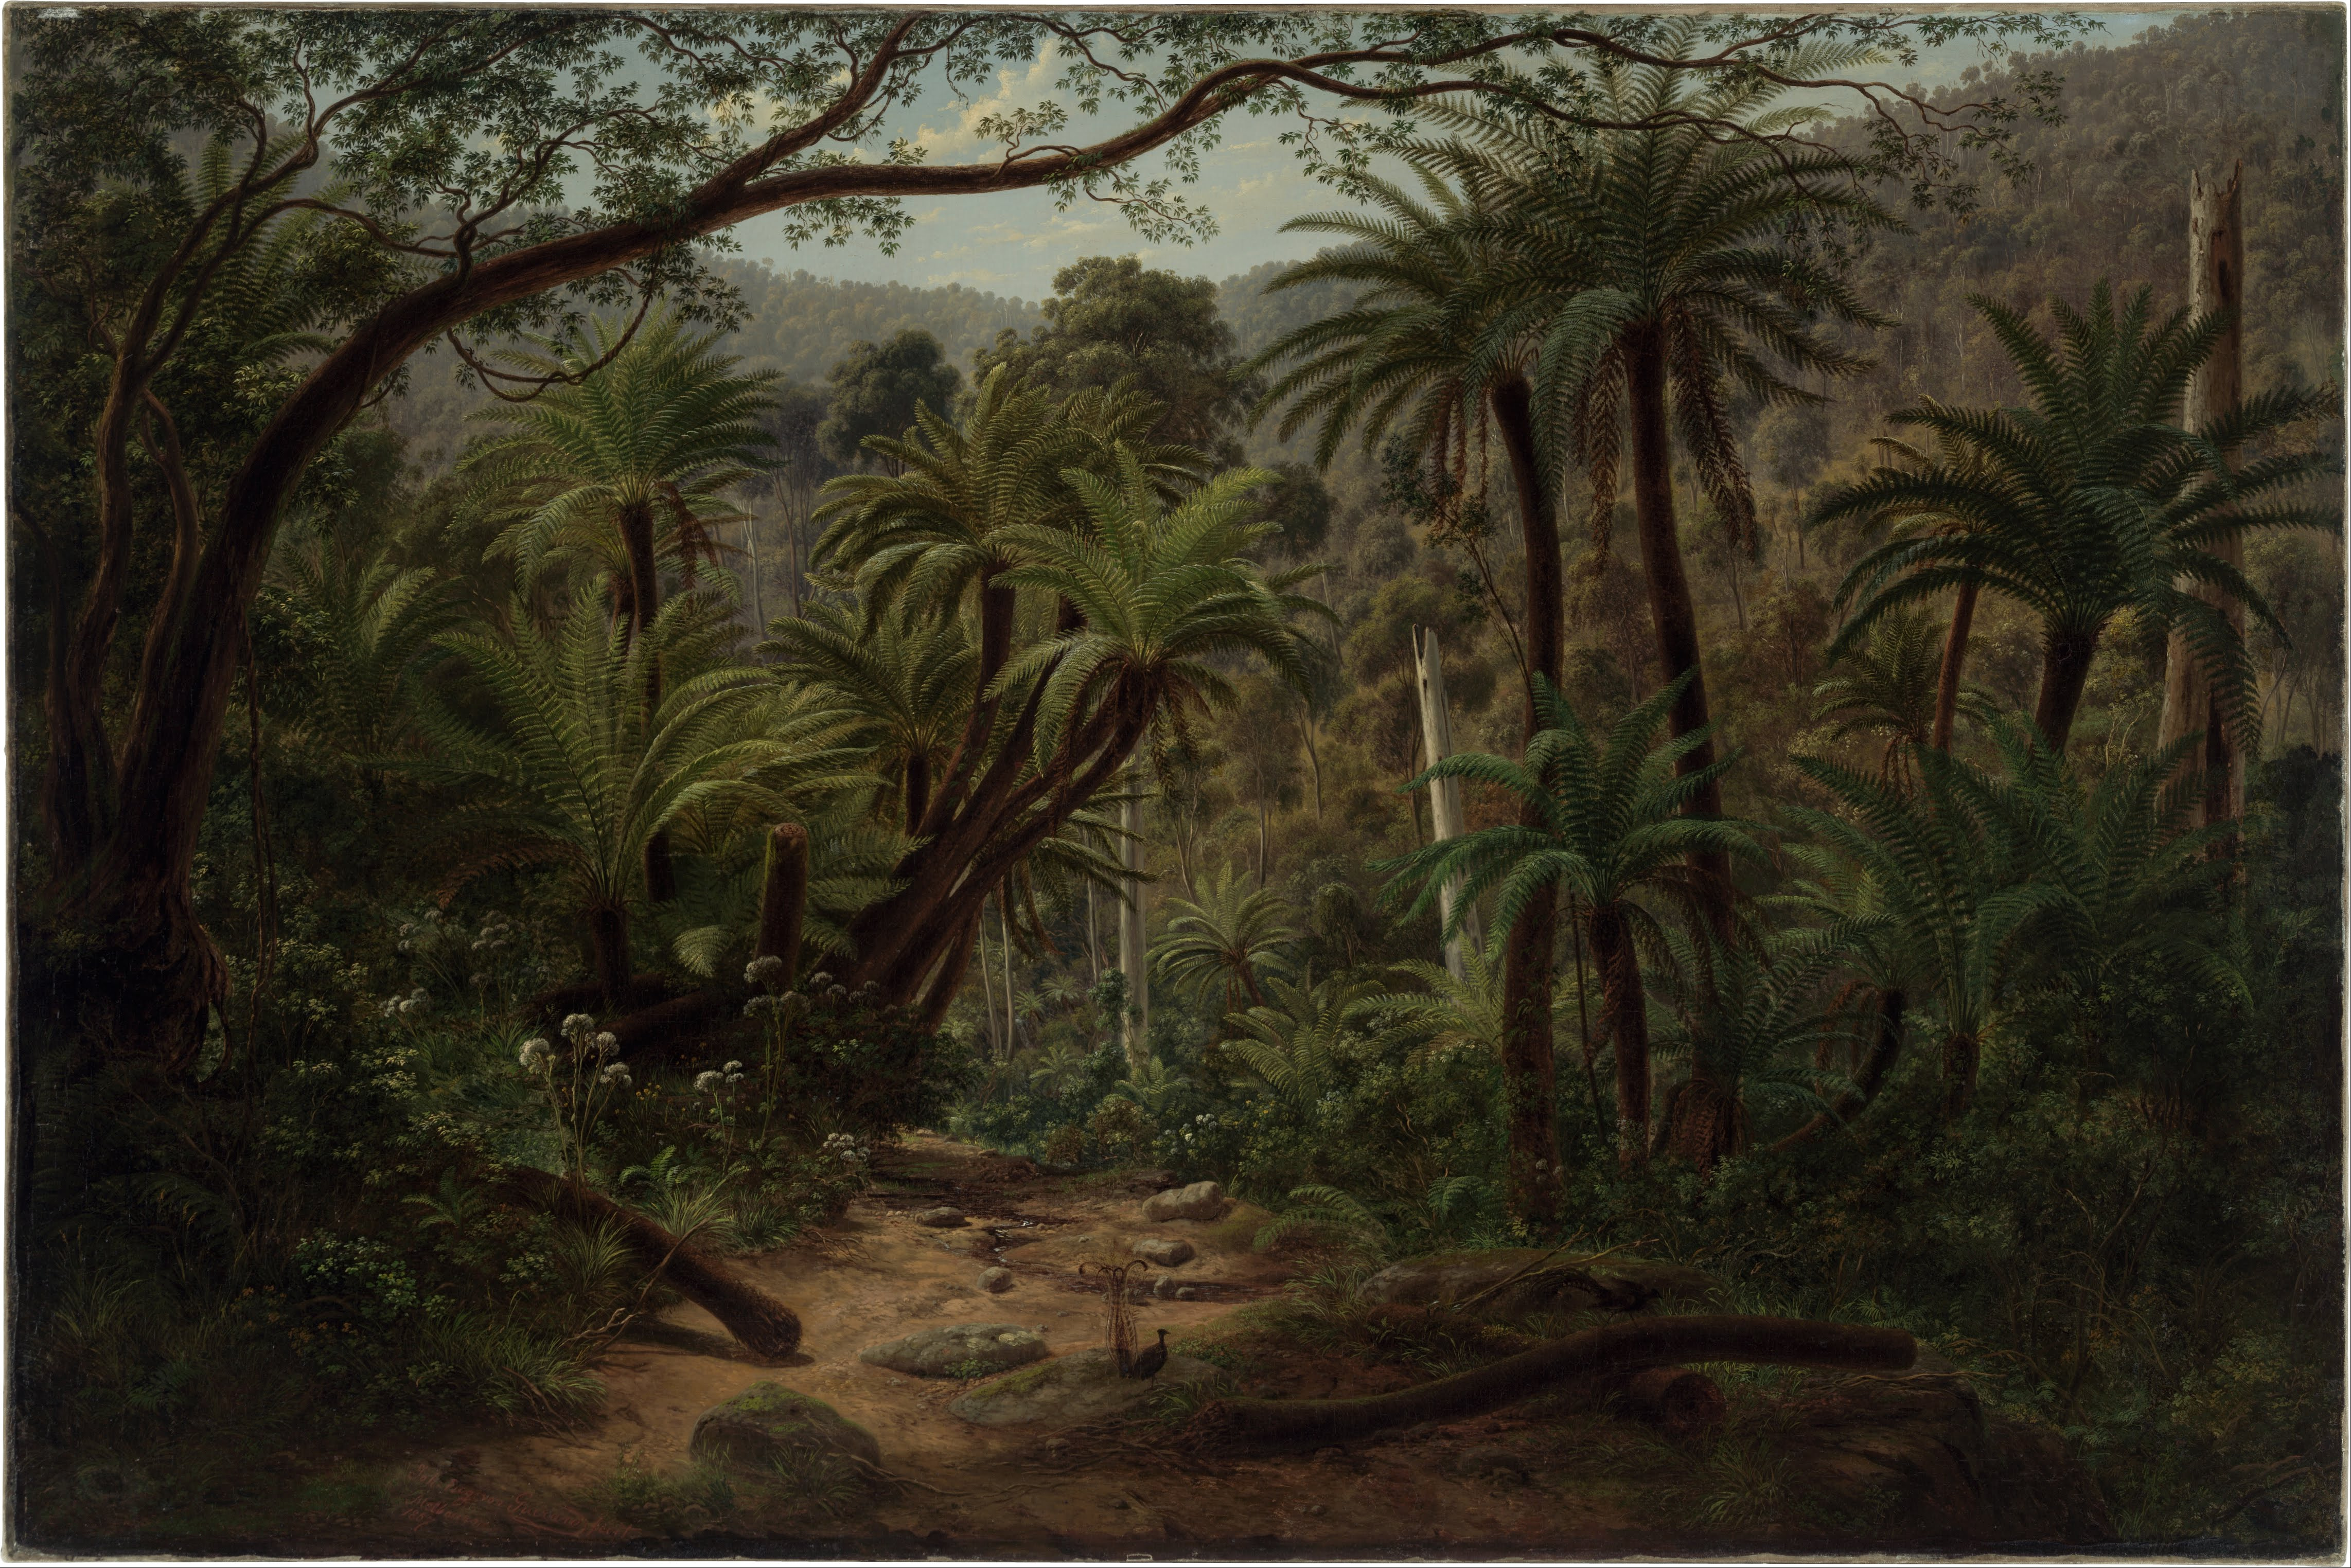 Kunstdruck Eugene von Guérard Ferntree Gully in the Dandenong Ranges